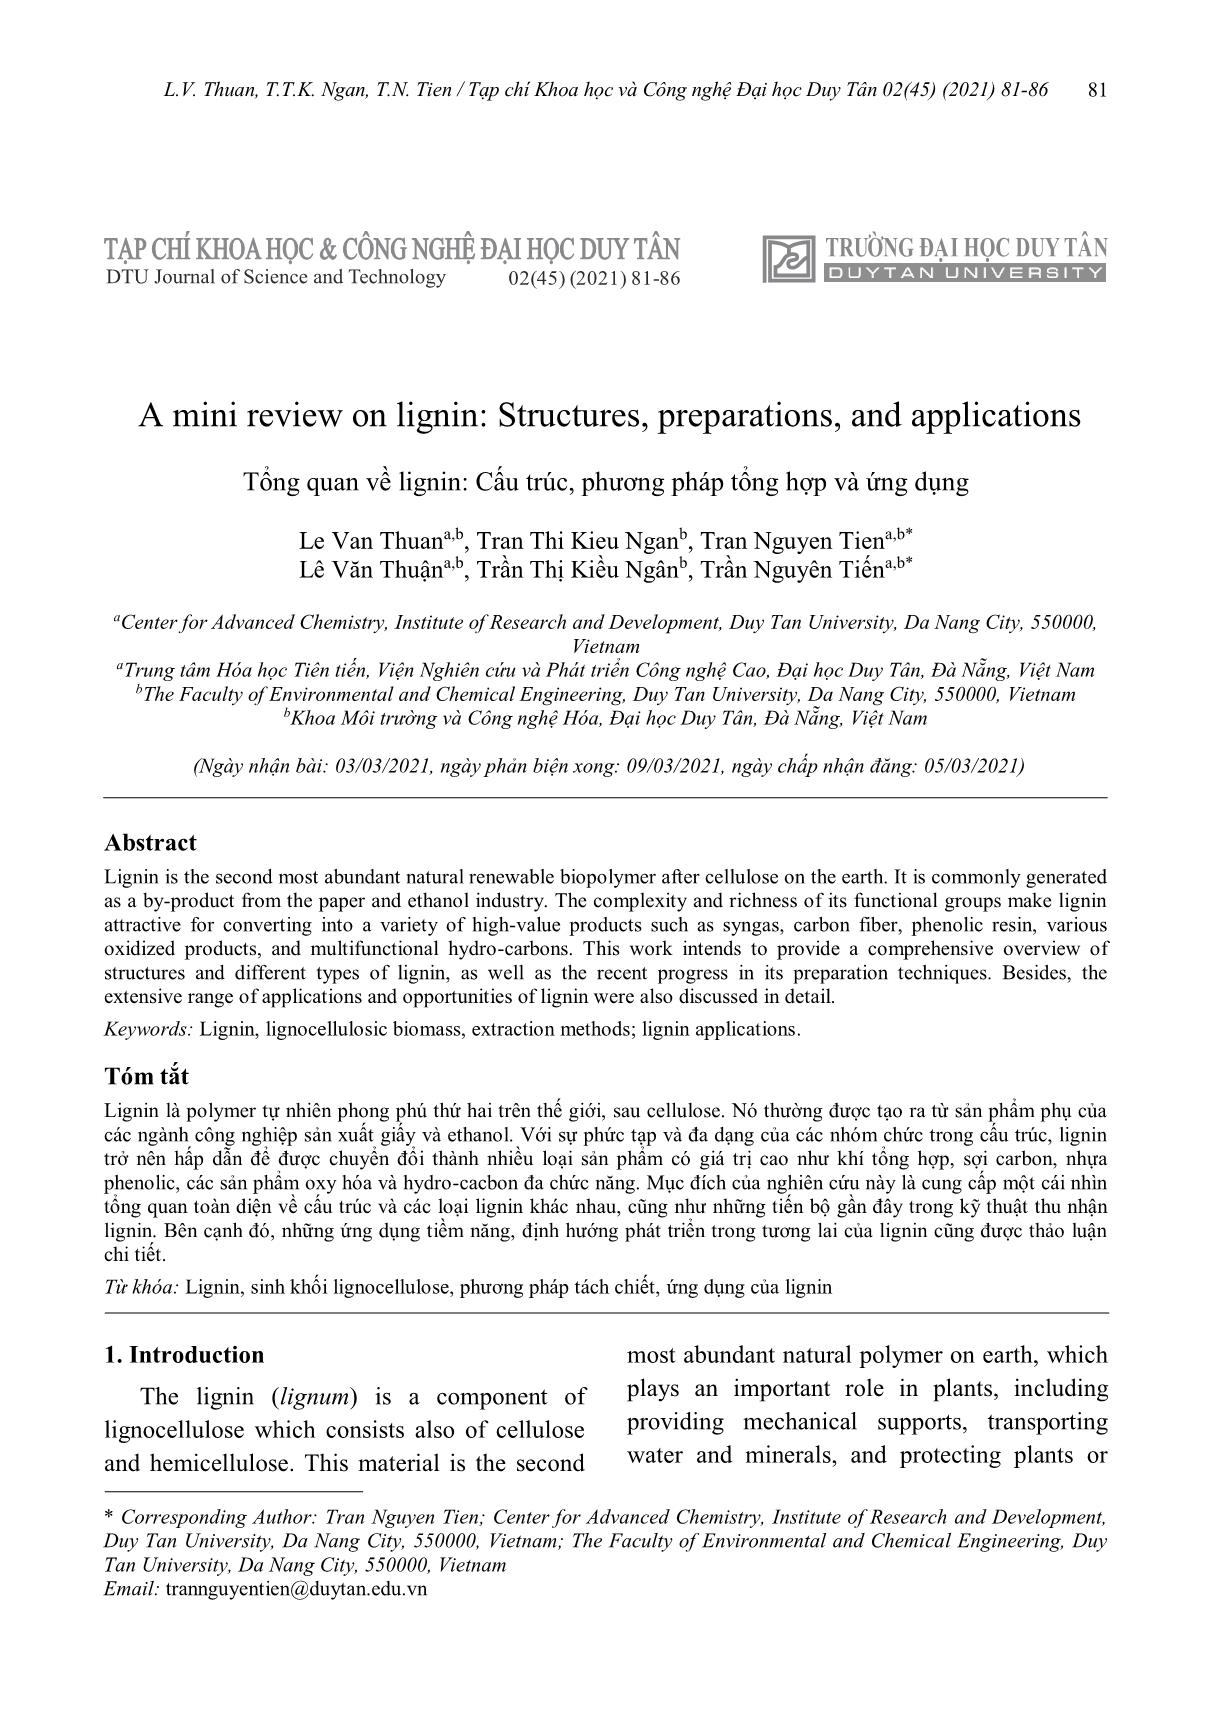 Tổng quan về lignin: Cấu trúc, phương pháp tổng hợp và ứng dụng trang 1